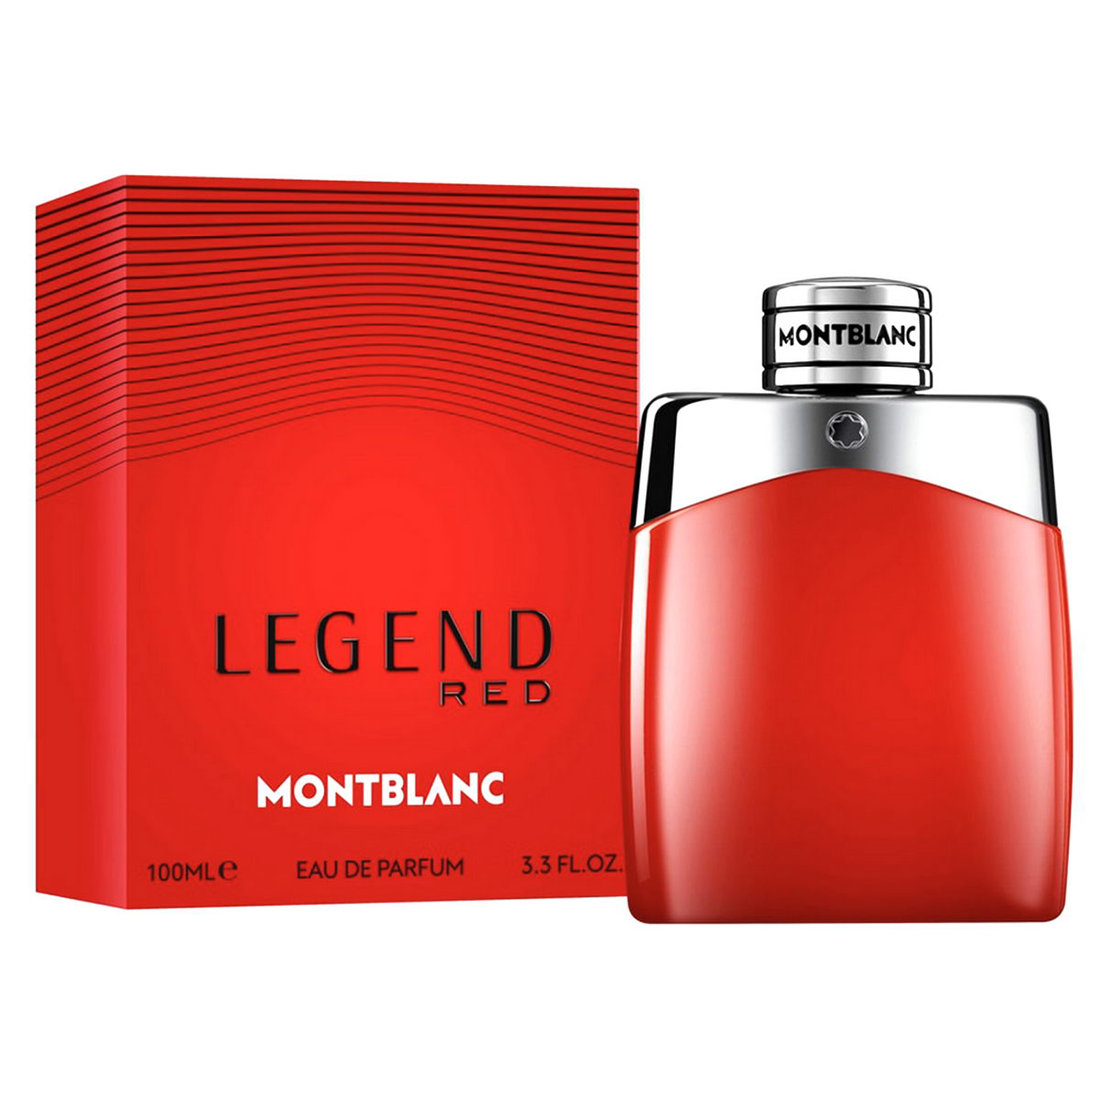 Legend Red 100 ml EDT Parfum barbatesc